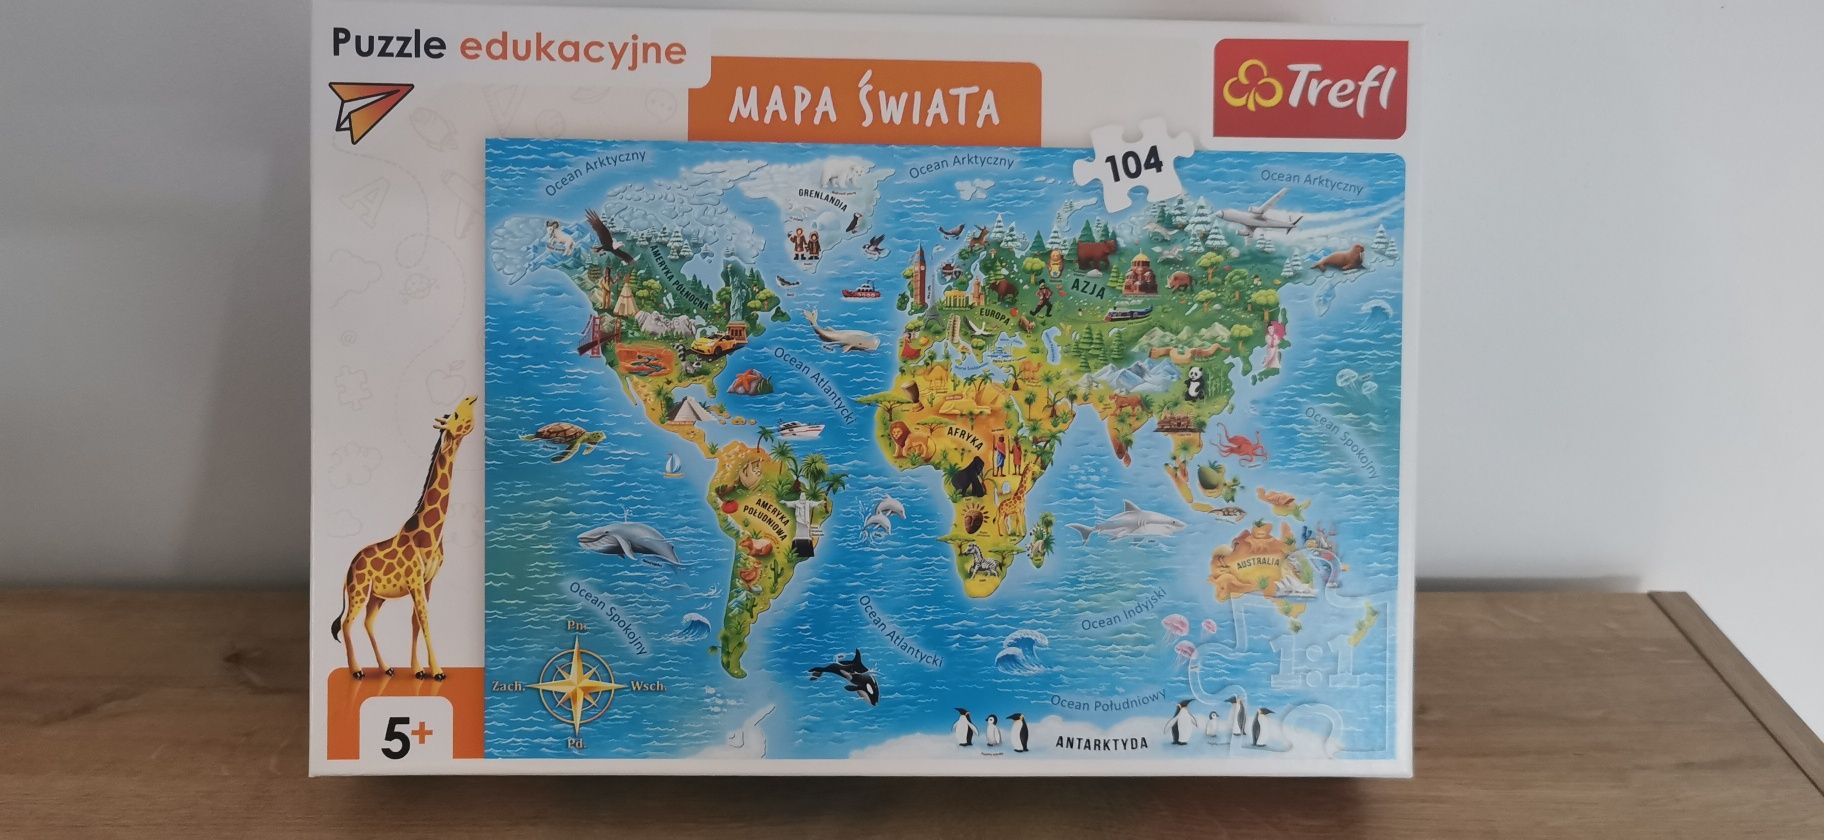 Puzzle edukacyjne mapa świata 5+